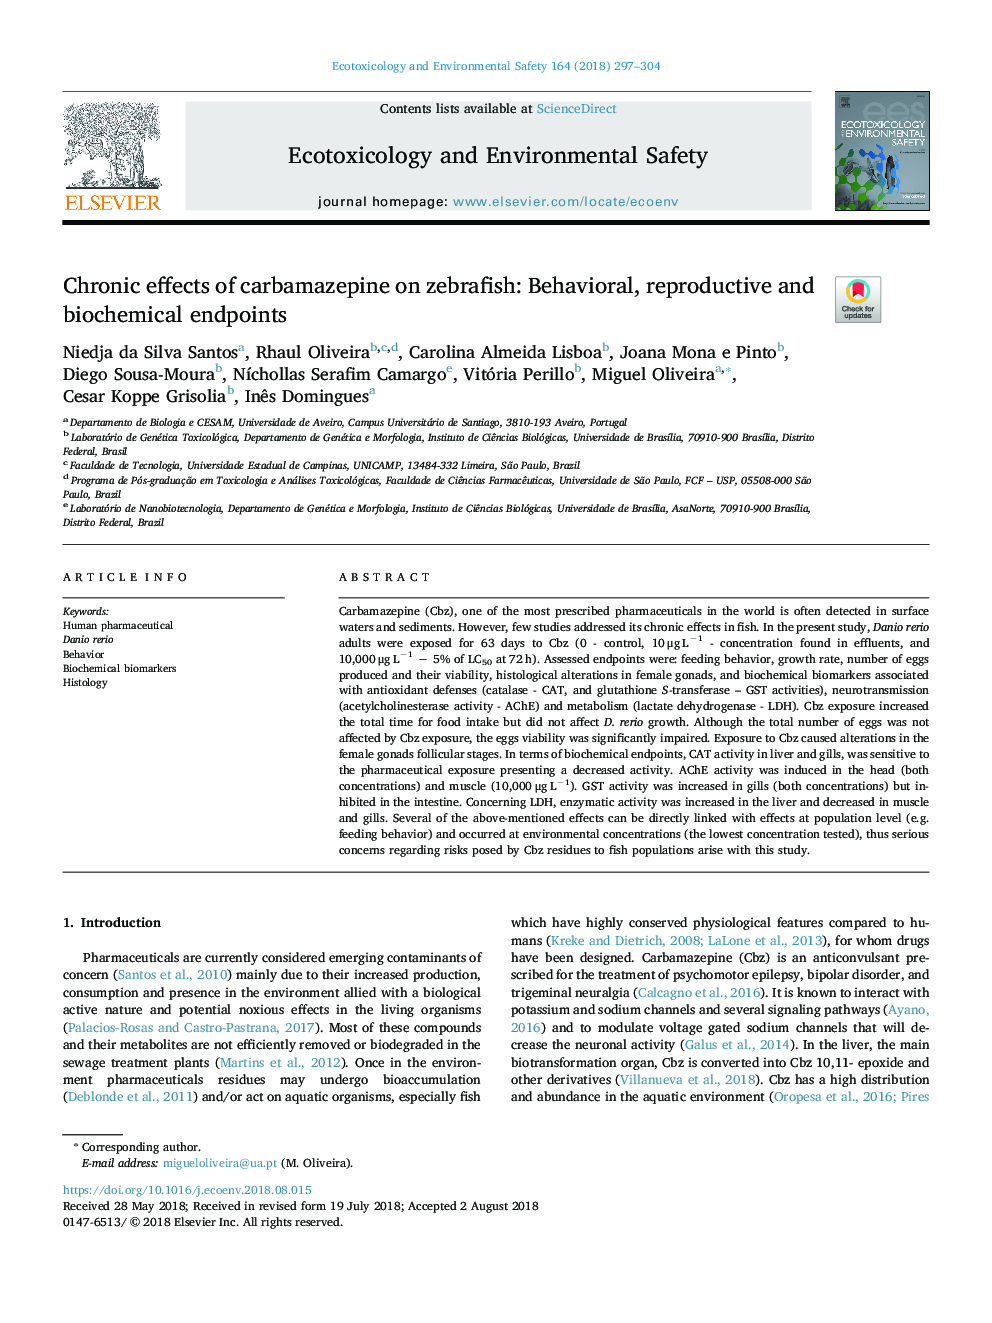 اثرات مزمن کاربامازپین بر روی ماهی قزل آلا: نقطه های رفتاری، باروری و بیوشیمیایی 